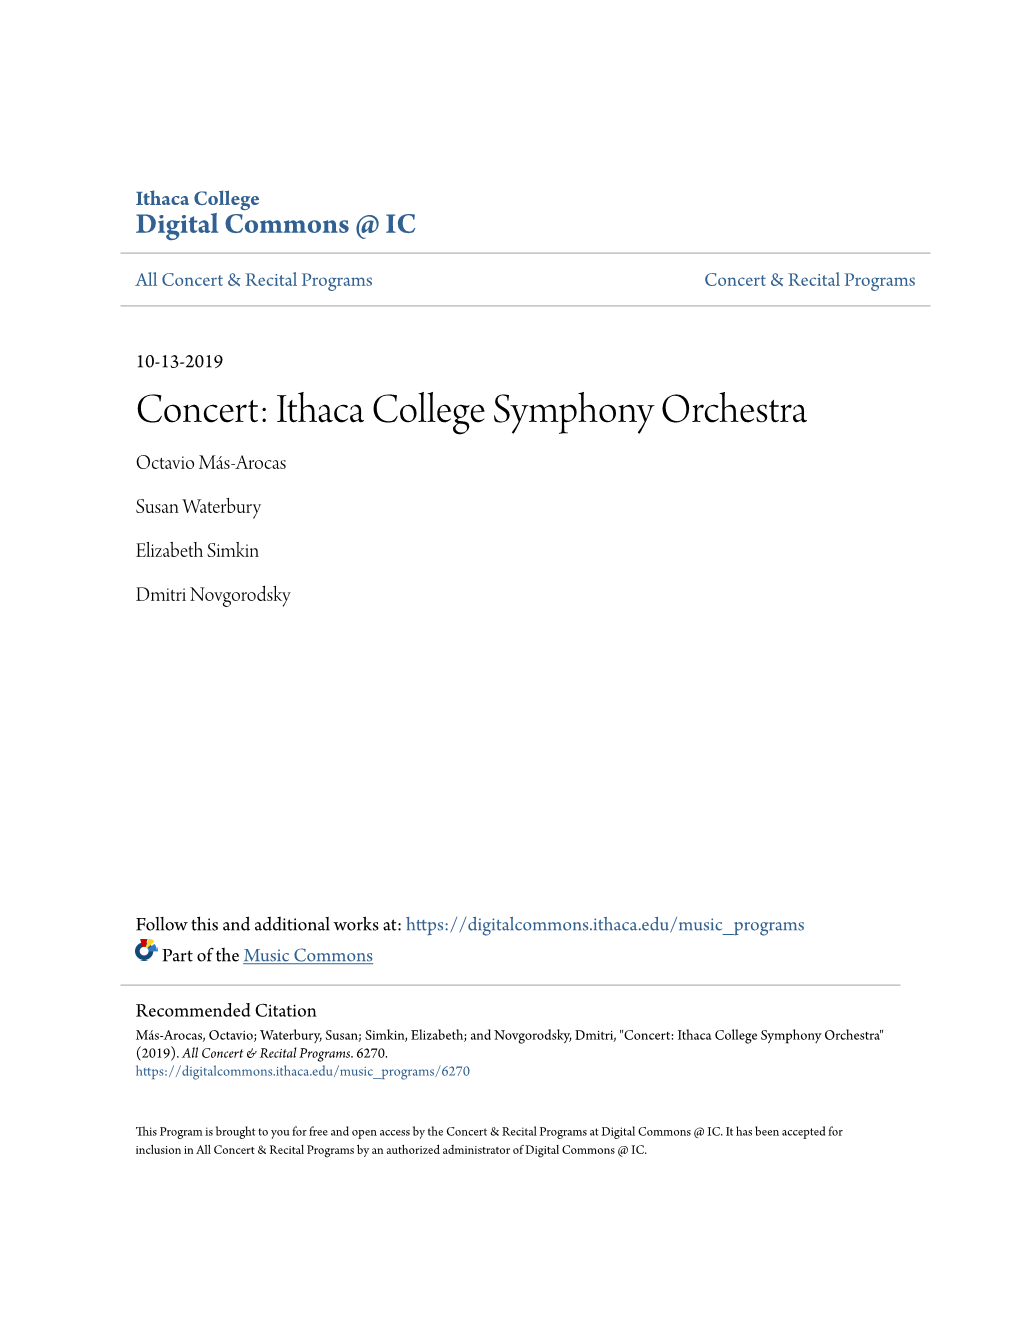 Ithaca College Symphony Orchestra Octavio Más-Arocas